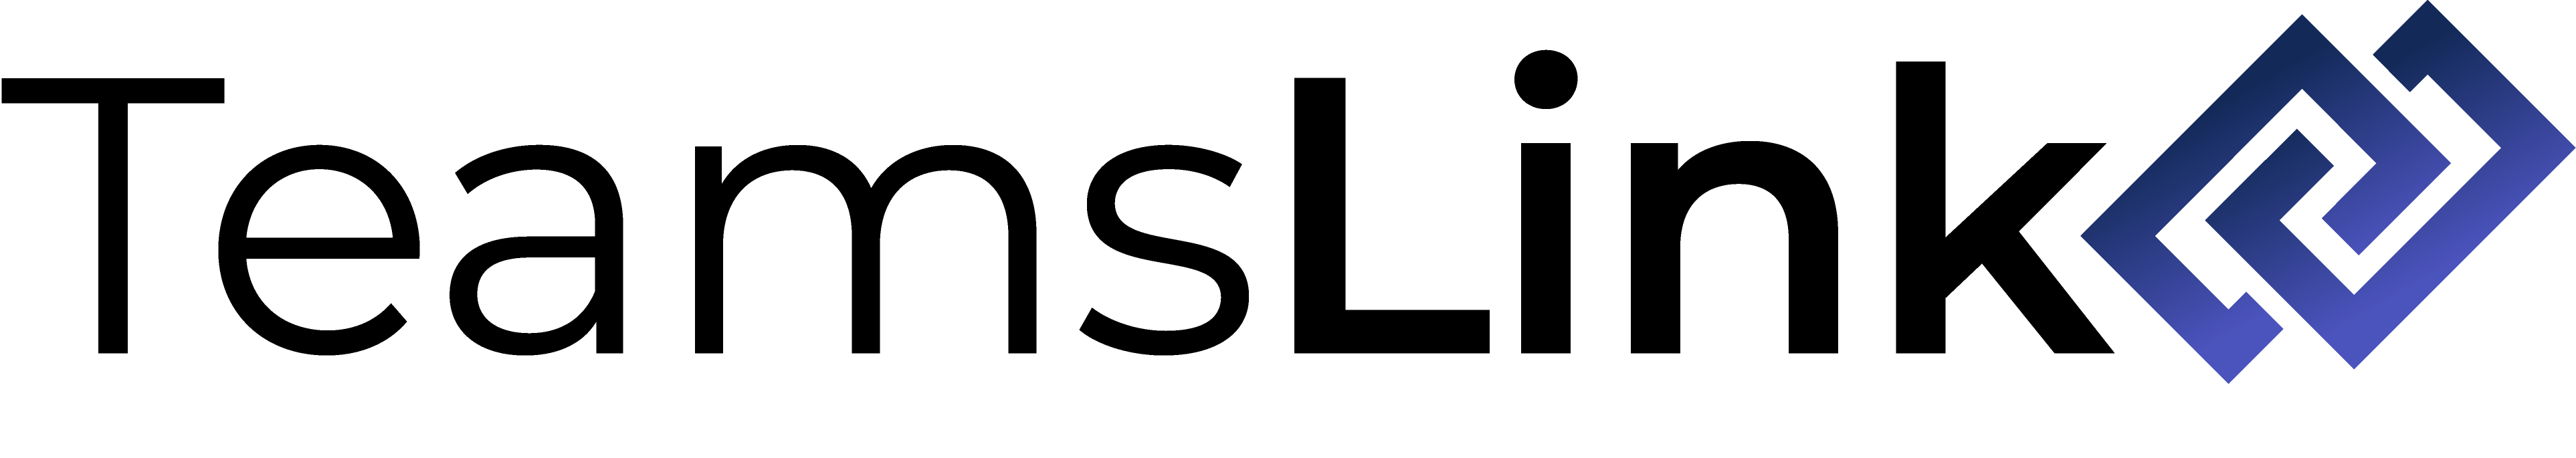 TeamsLink Logo-1